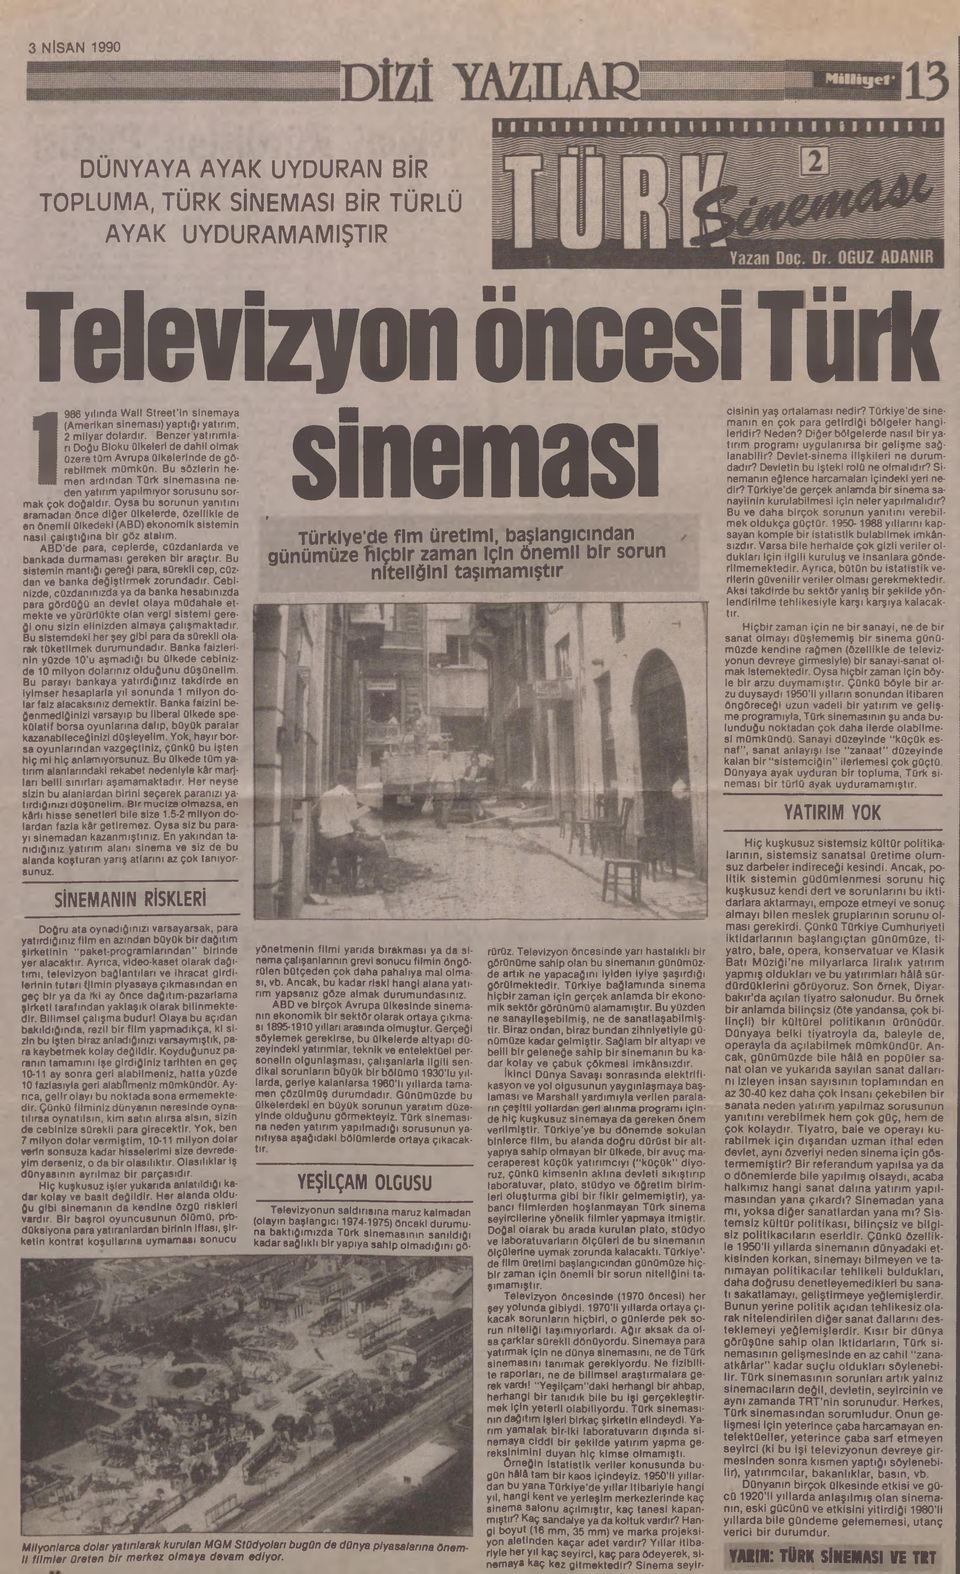 Bu sözlerin hemen ardından Türk sinemasına neden yatırım yapılmıyor sorusunu sormak çok doğaldır.